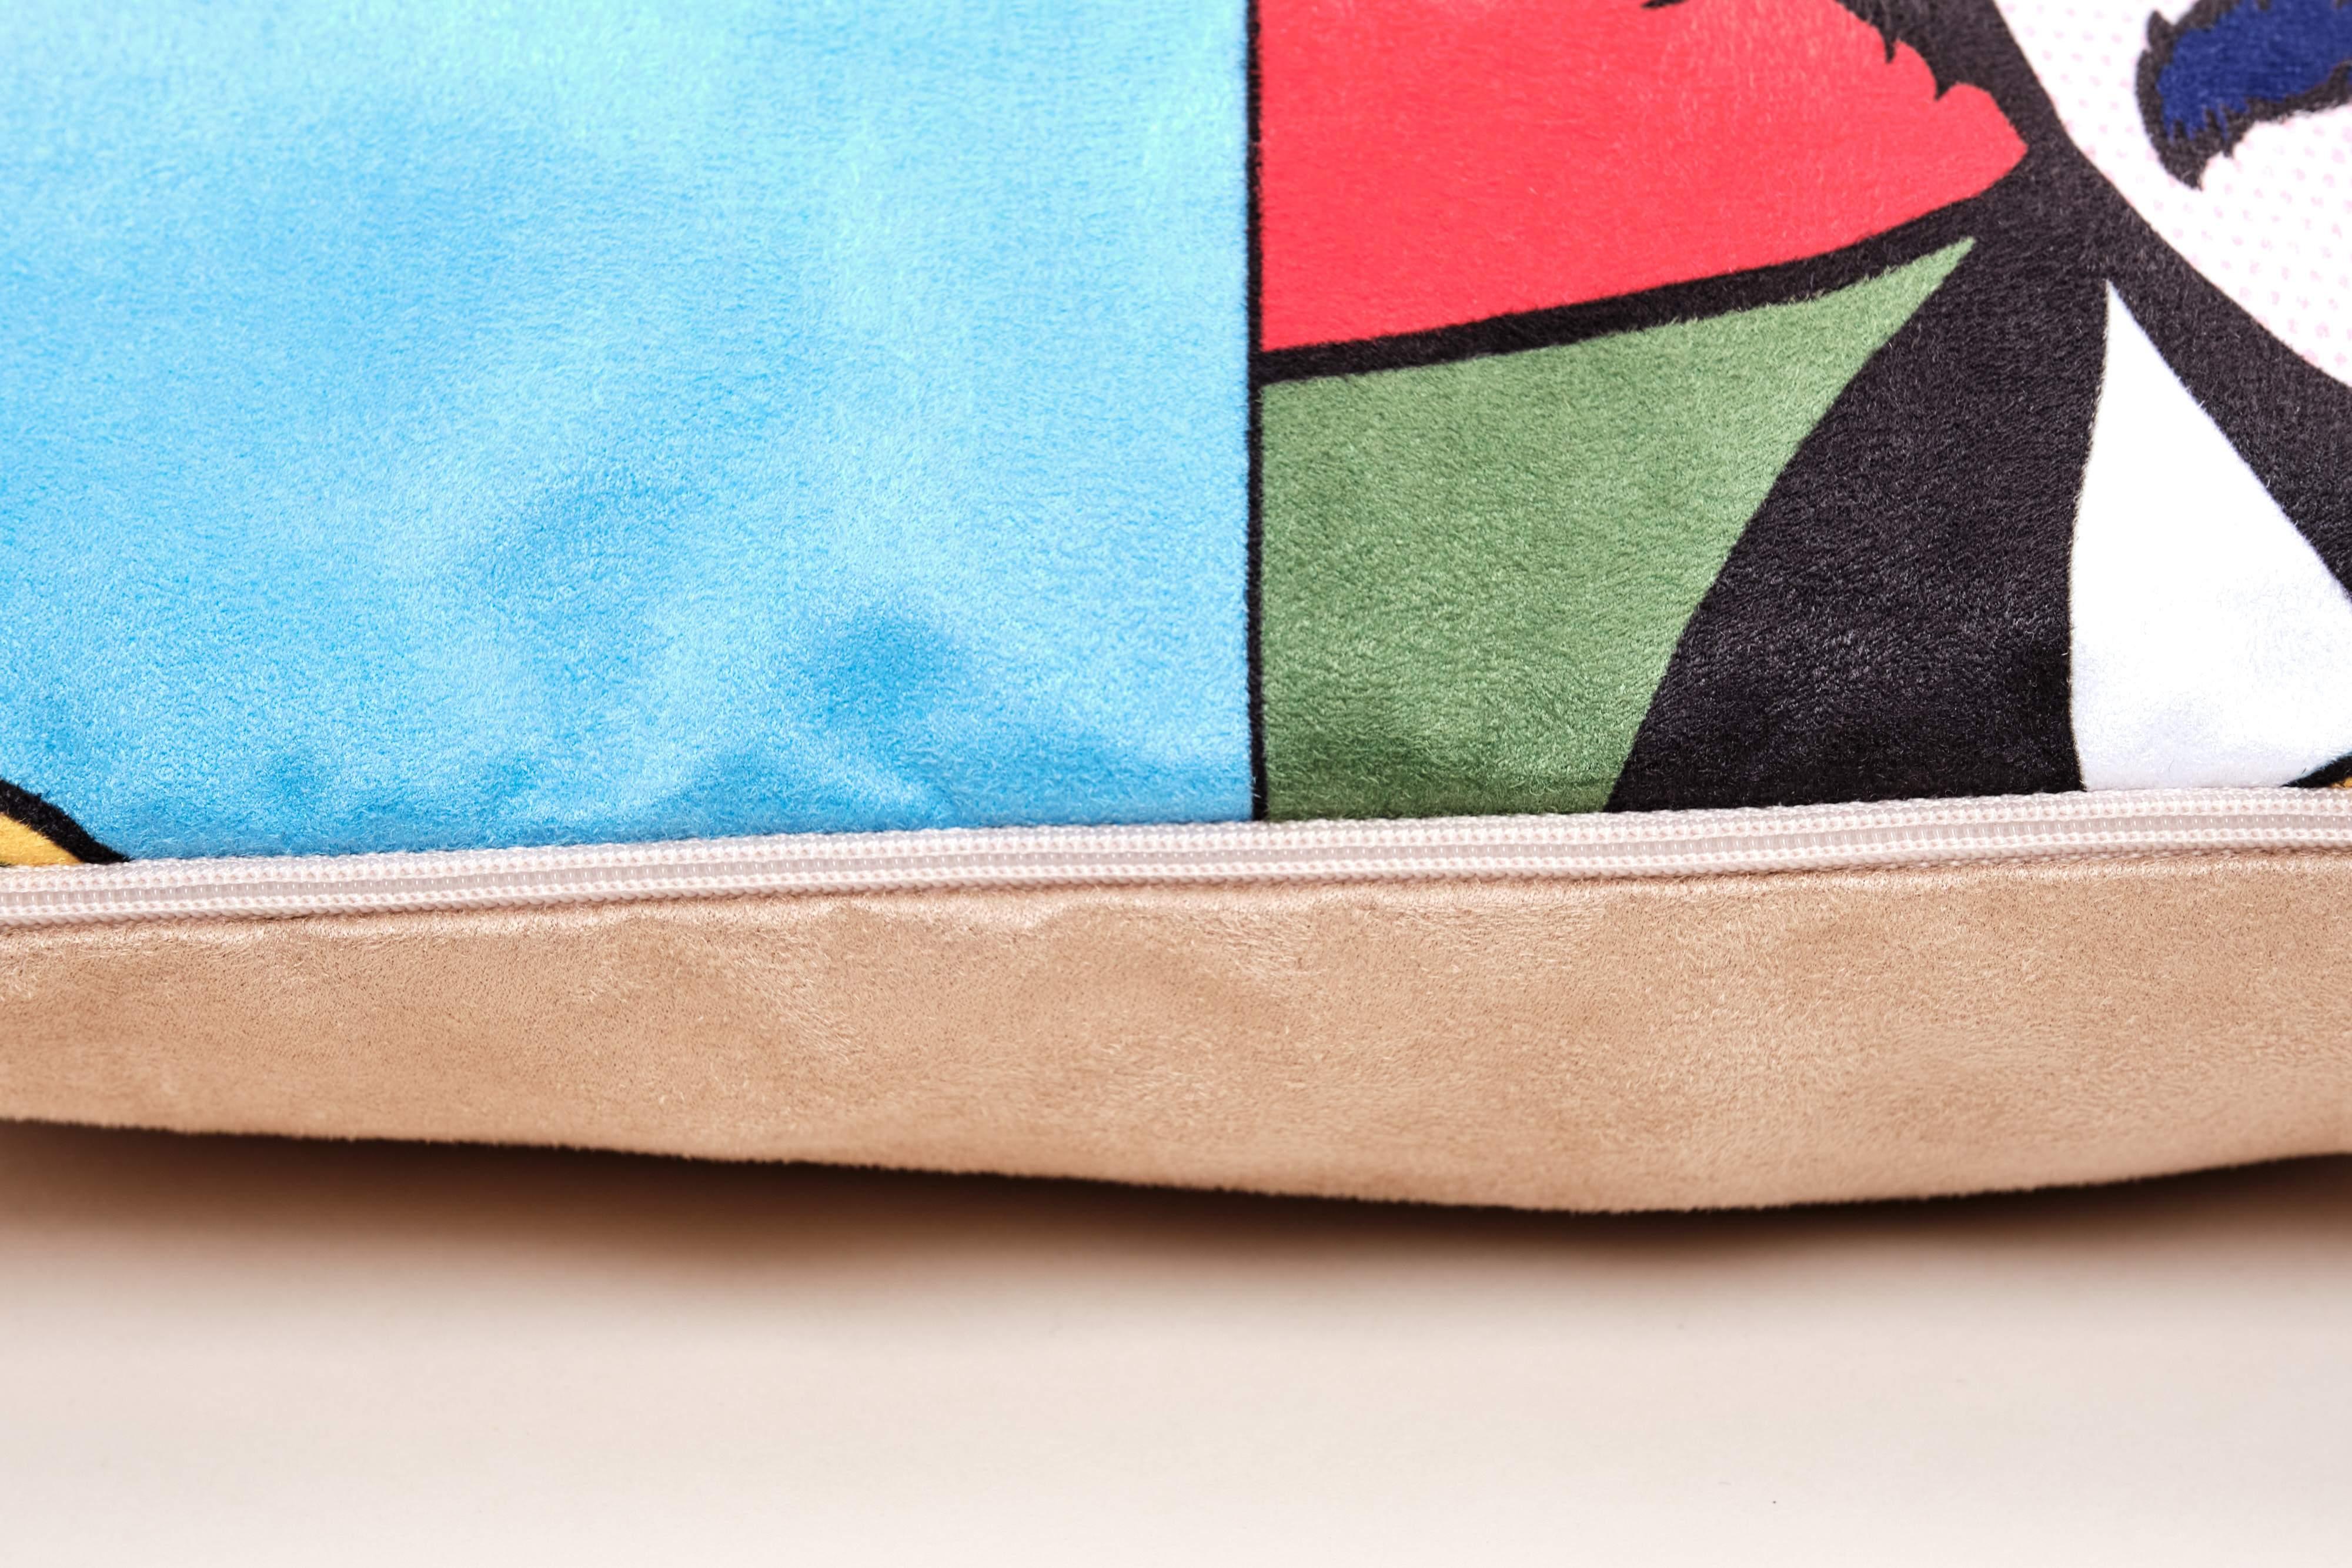 Susies - Art Print Cushion - Handmade Cushions UK - WeLoveCushions